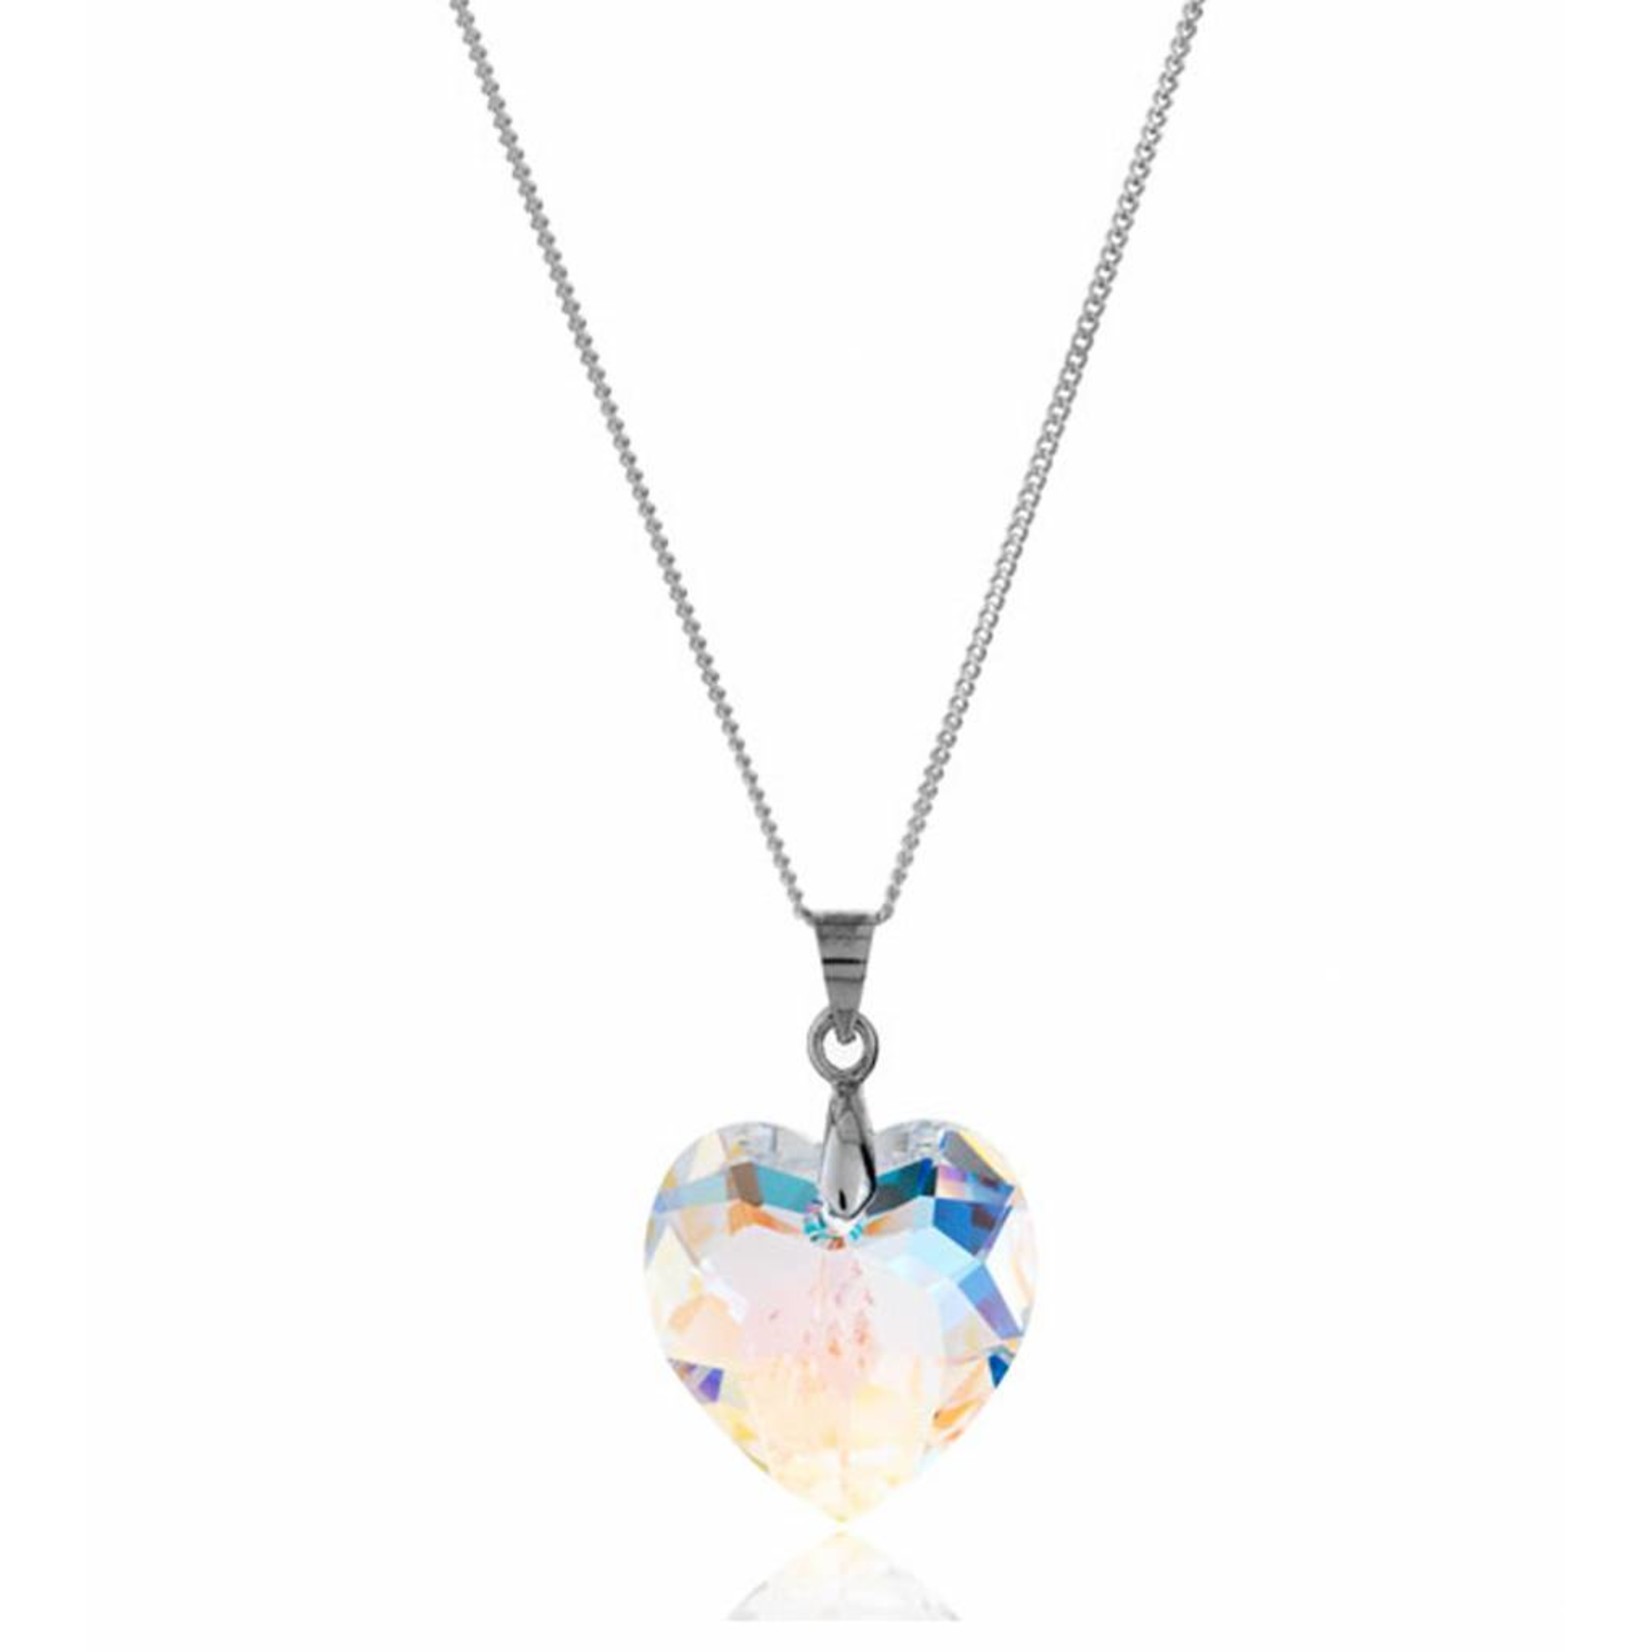 Diamond Style Halskette Damen - Sterling Silber 925 - Aurore Boreale Kristall - Swarovski Element - Stein als Herz - Feingliedrig Karabinerverschluss